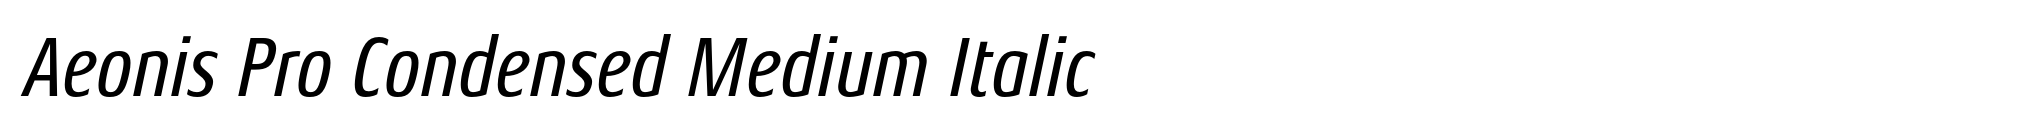 Aeonis Pro Condensed Medium Italic image